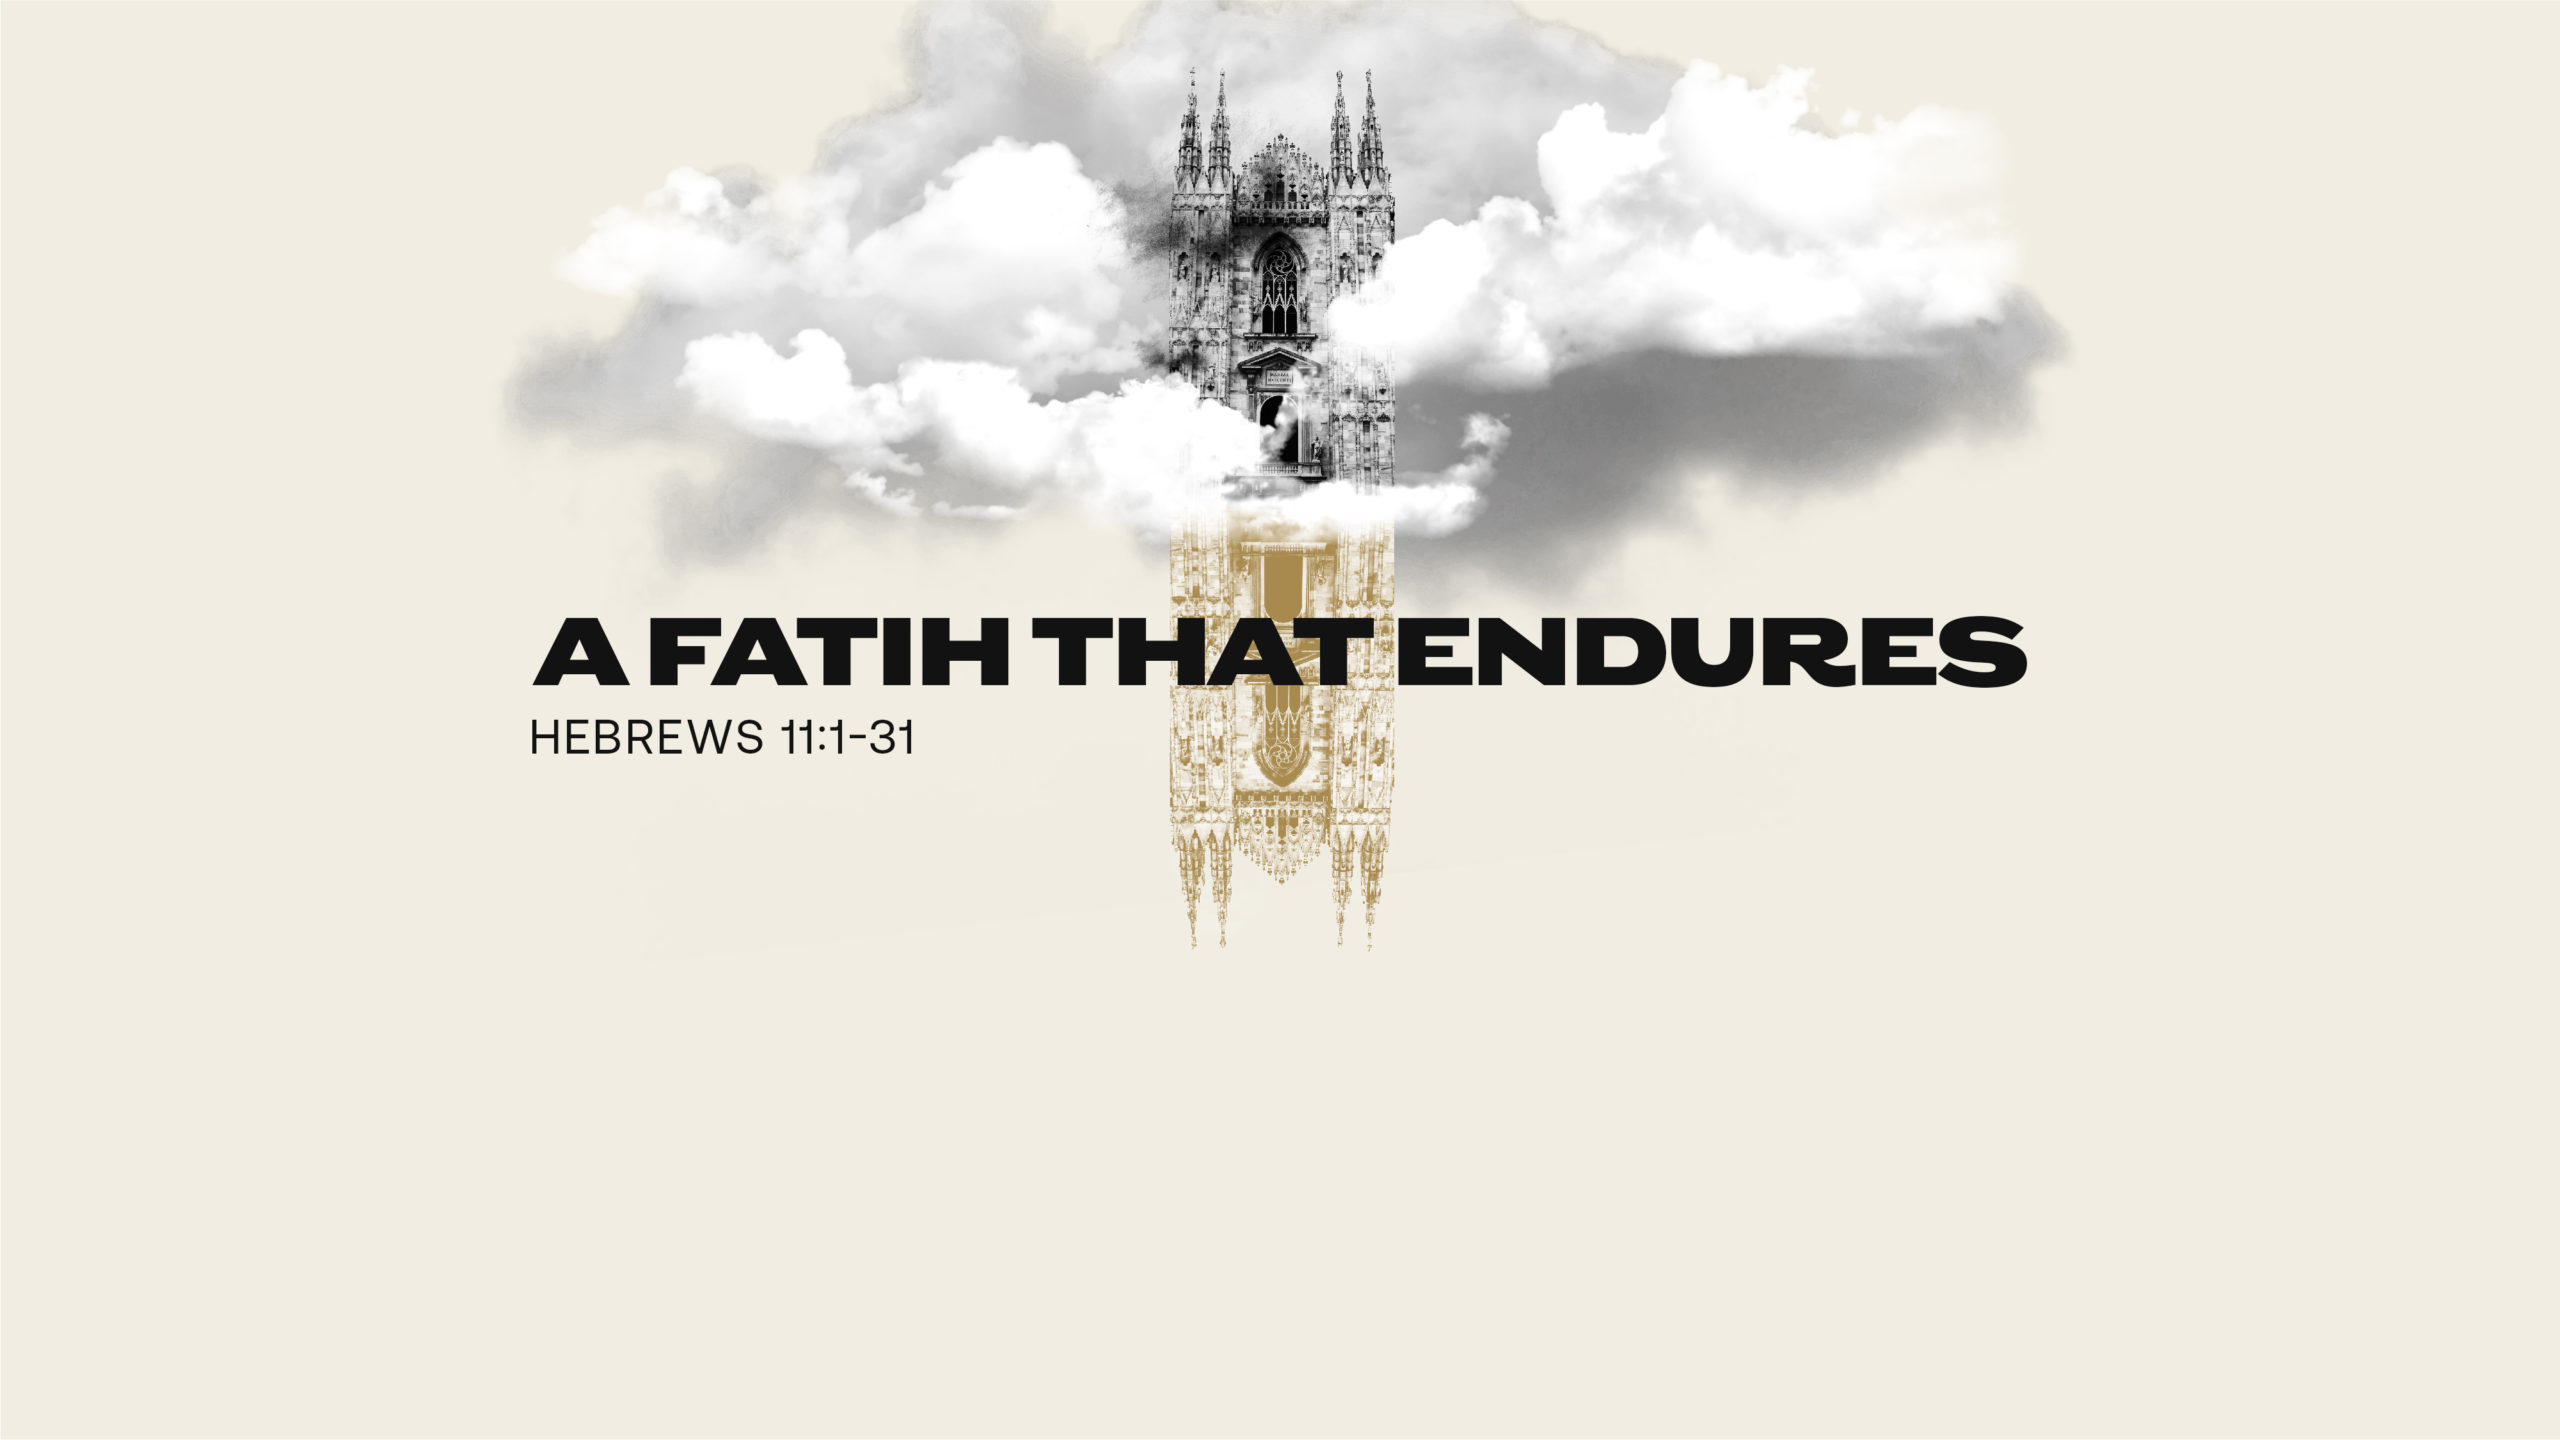 A Faith That Endures